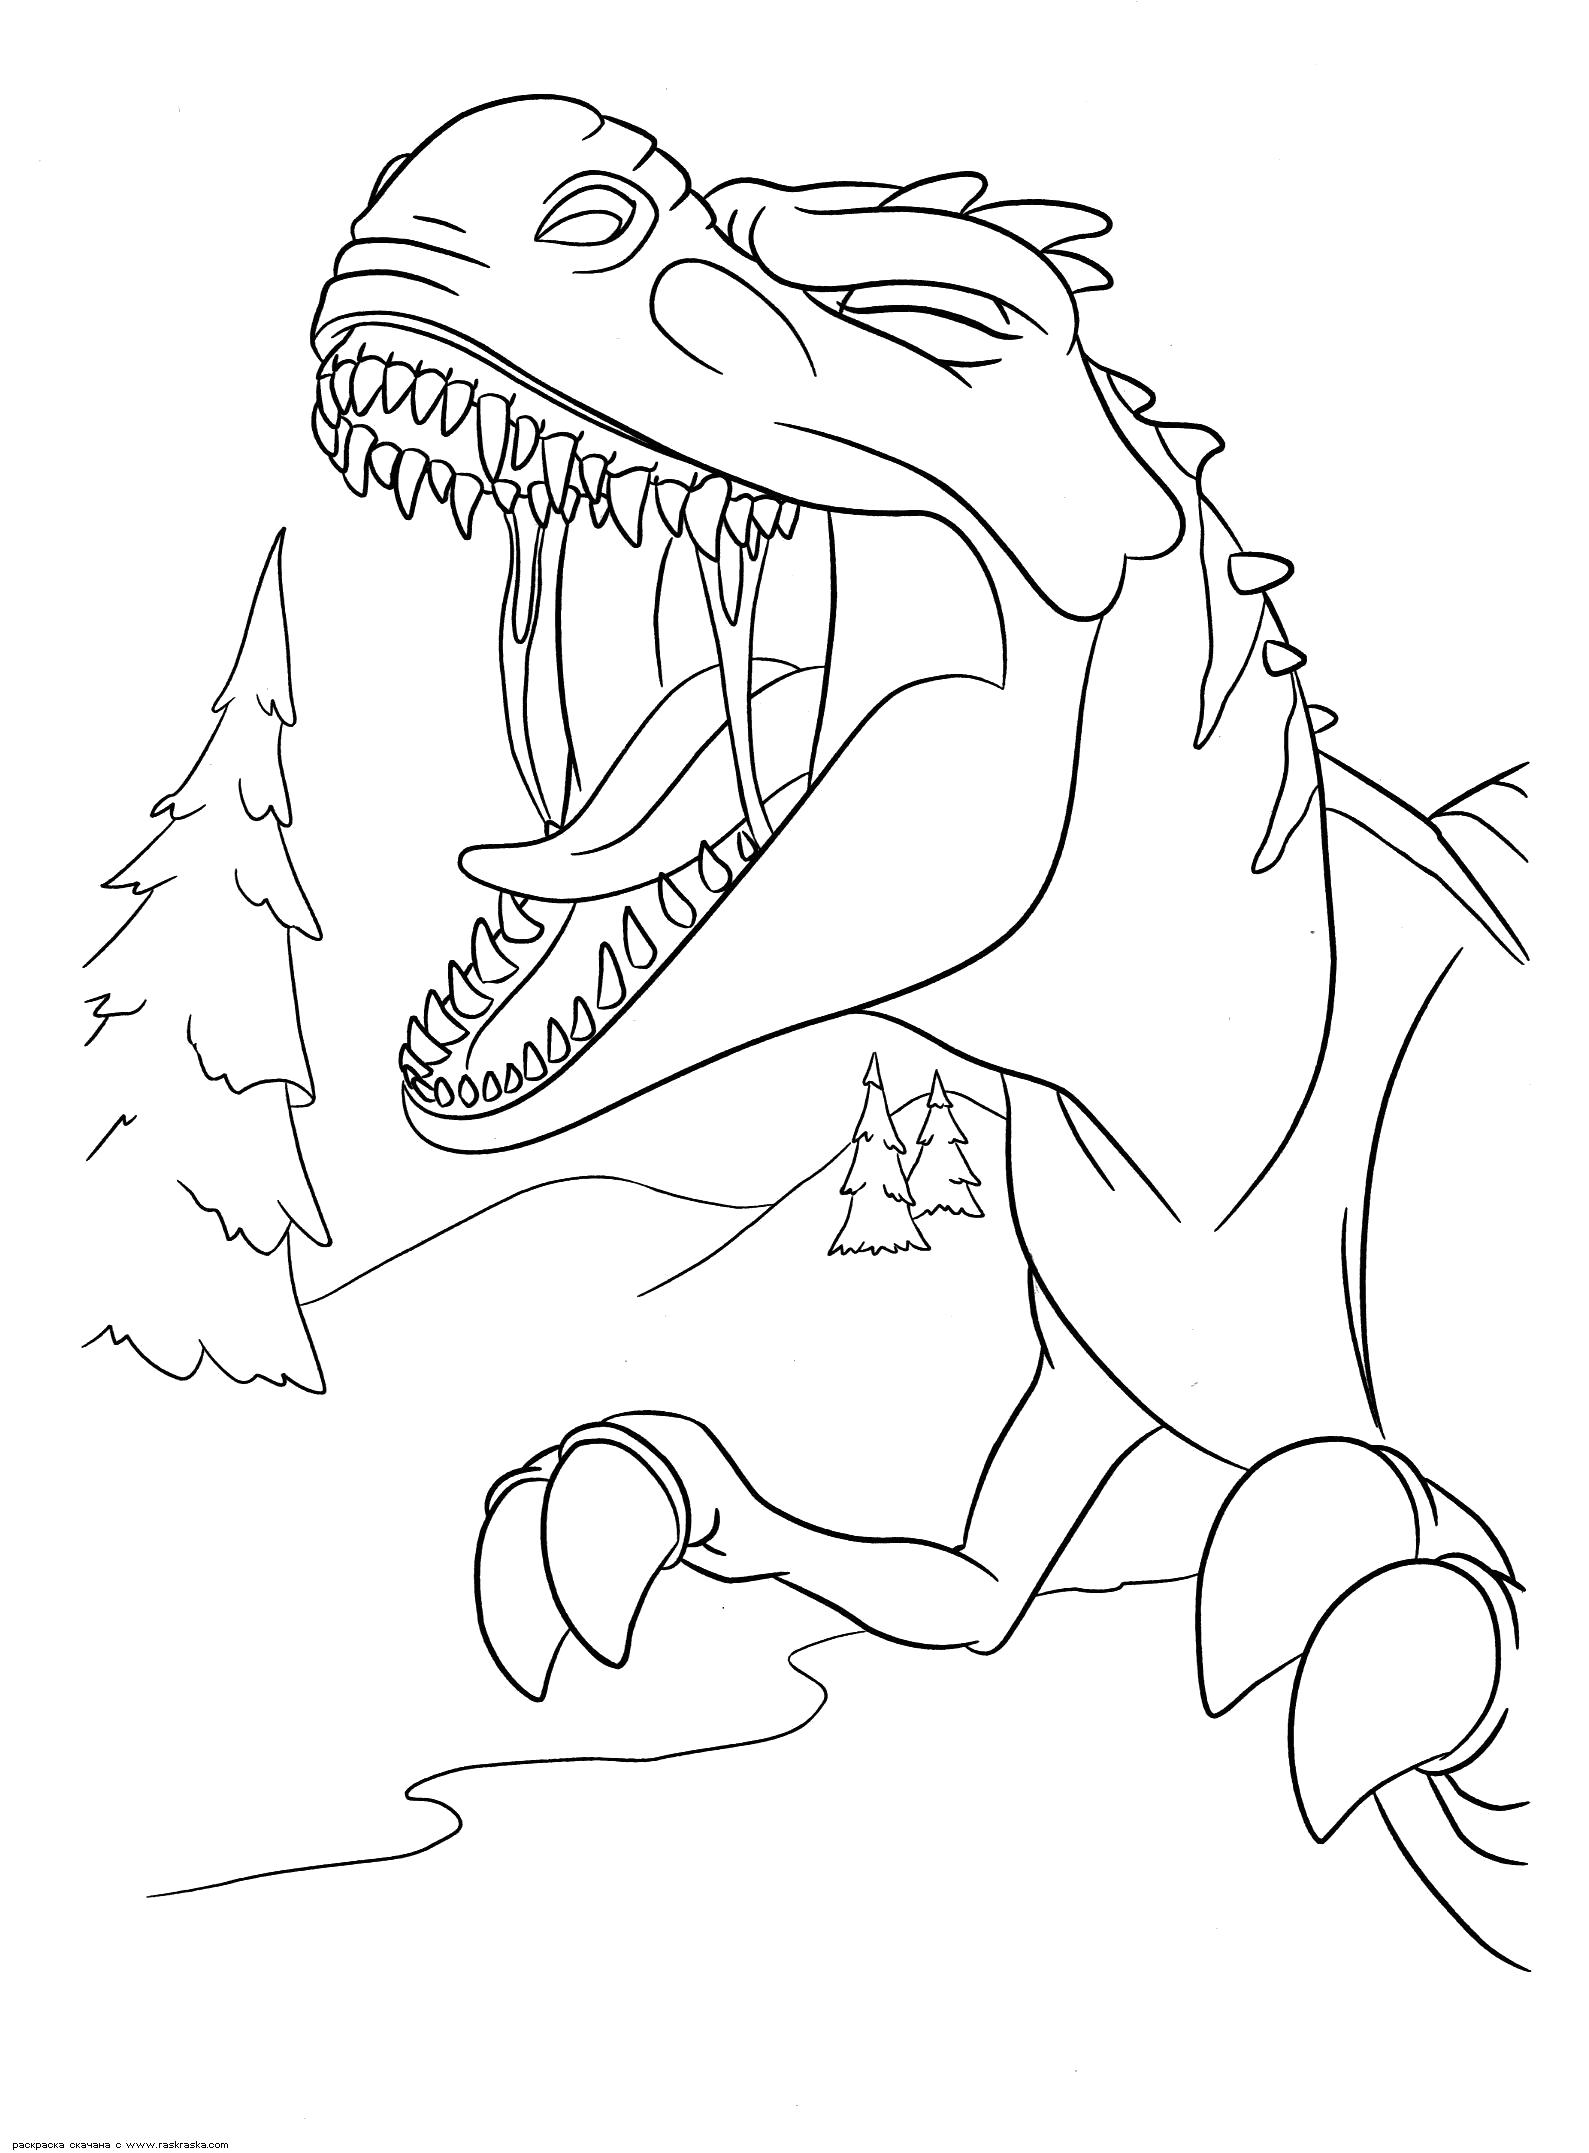 Название: Раскраска Раскраска Громкий рёв мамаши. Раскраска Раскраска динозавра из мультика Ледниковый период 3: Эра динозавров. Разукрашка скачать бесплатно. Категория: динозавр. Теги: динозавр.